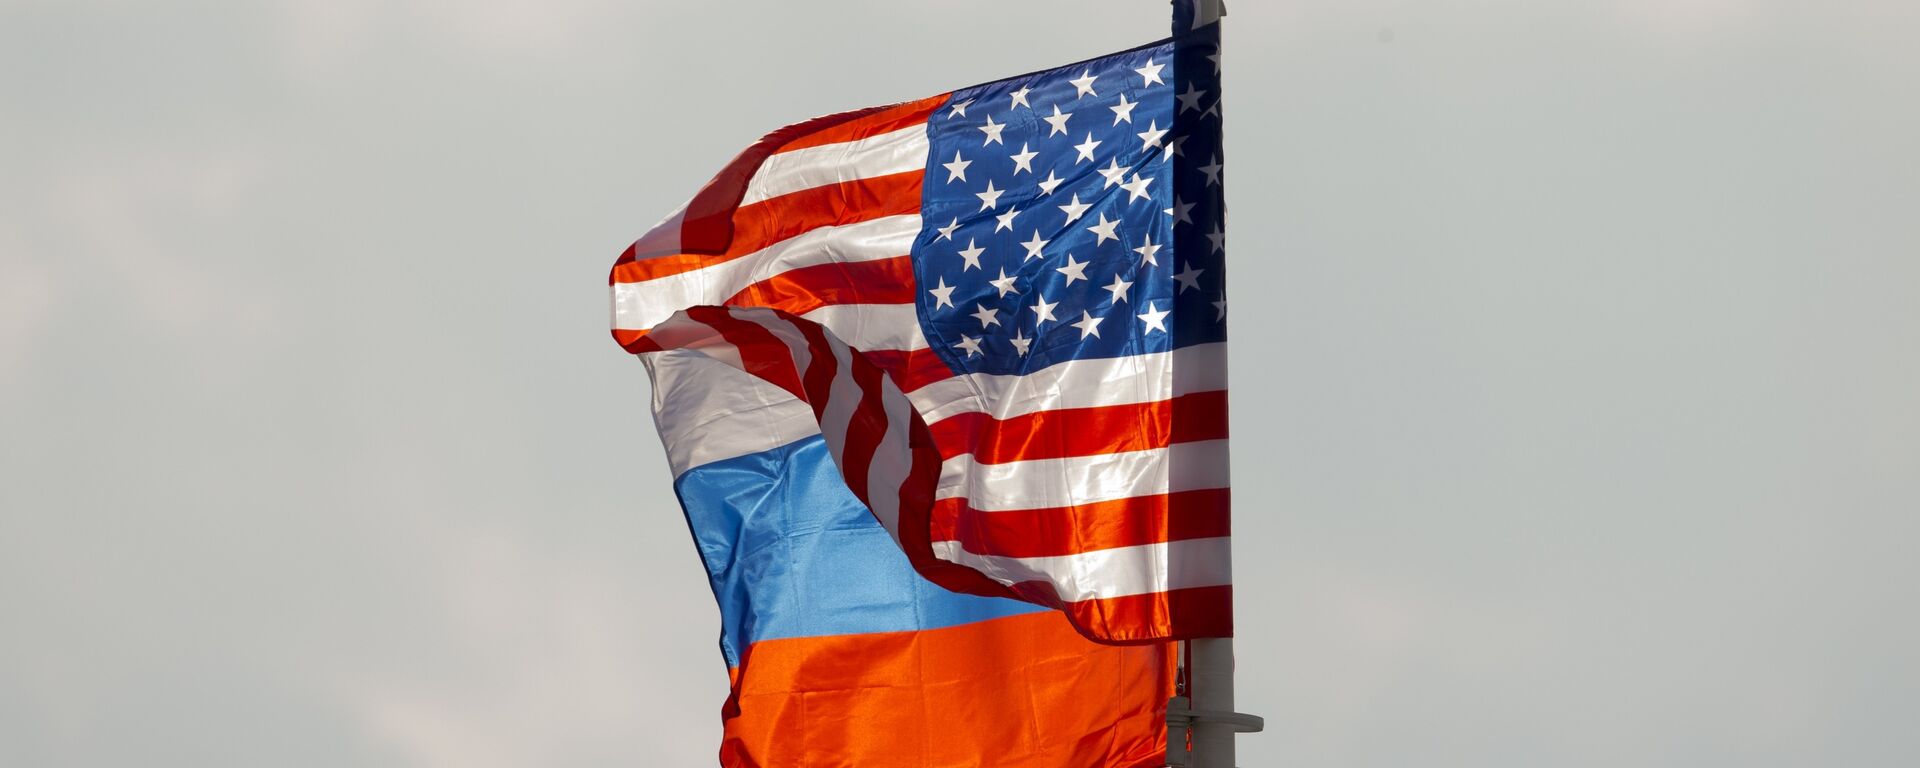 Banderas de Rusia y EEUU (archivo) - Sputnik Mundo, 1920, 09.02.2021